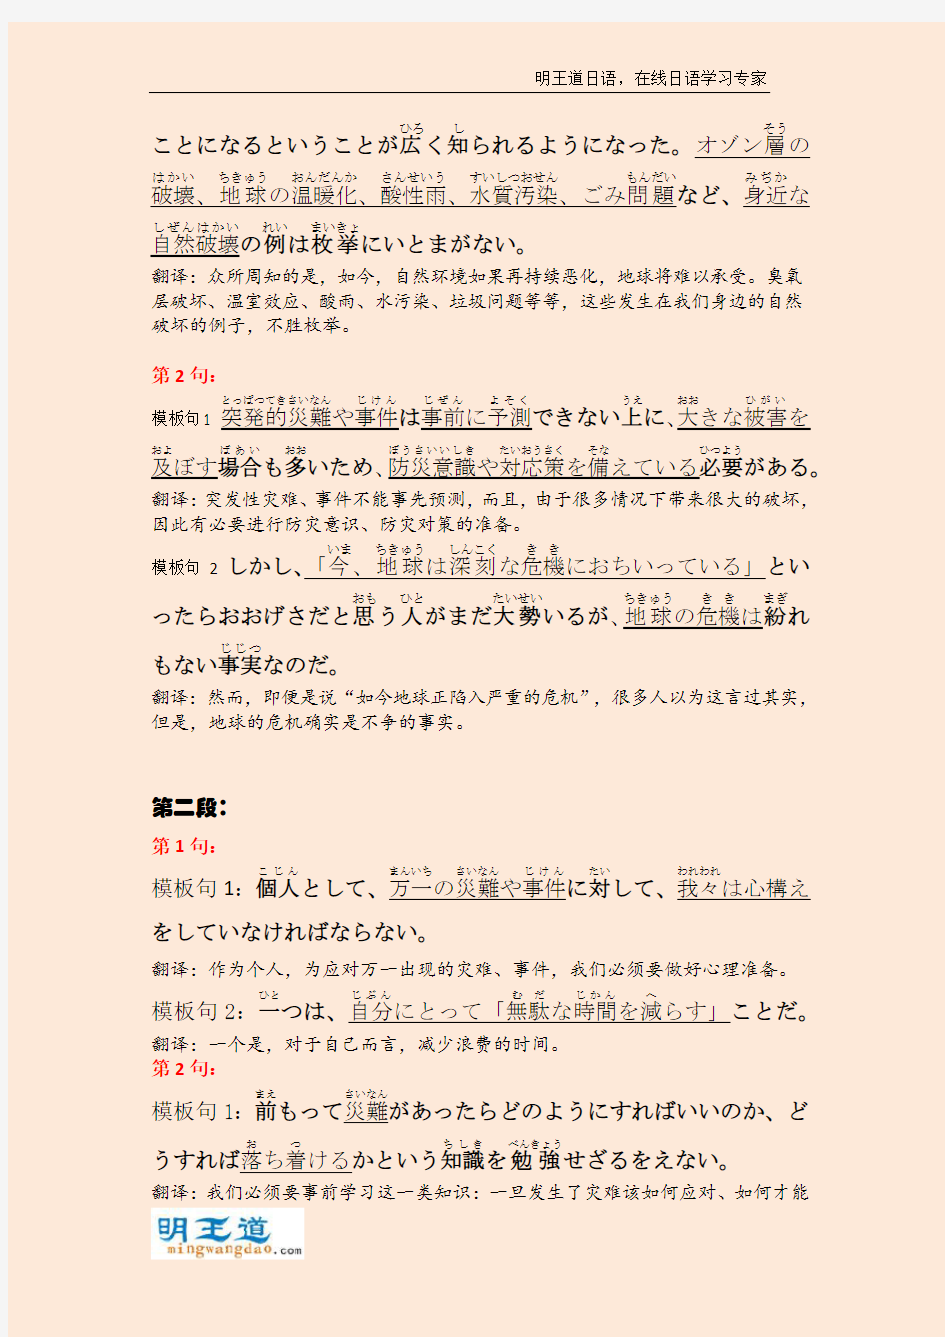 考研日语万能作文模板 - 第一类